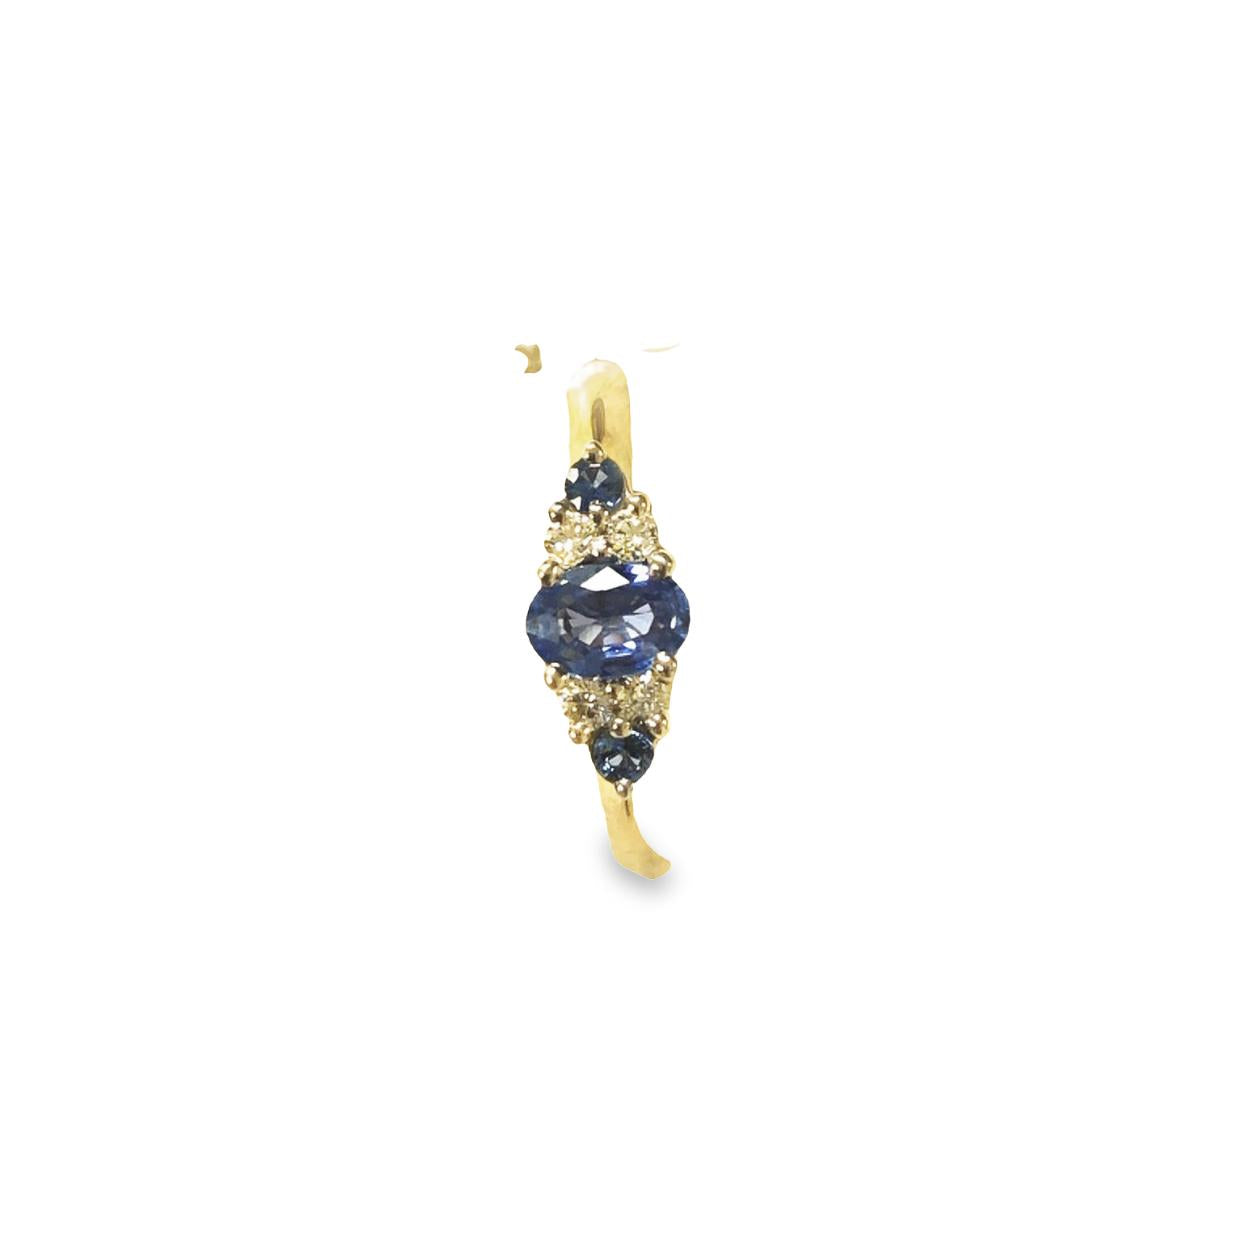 Ceylonese Sapphire & Diamond ring